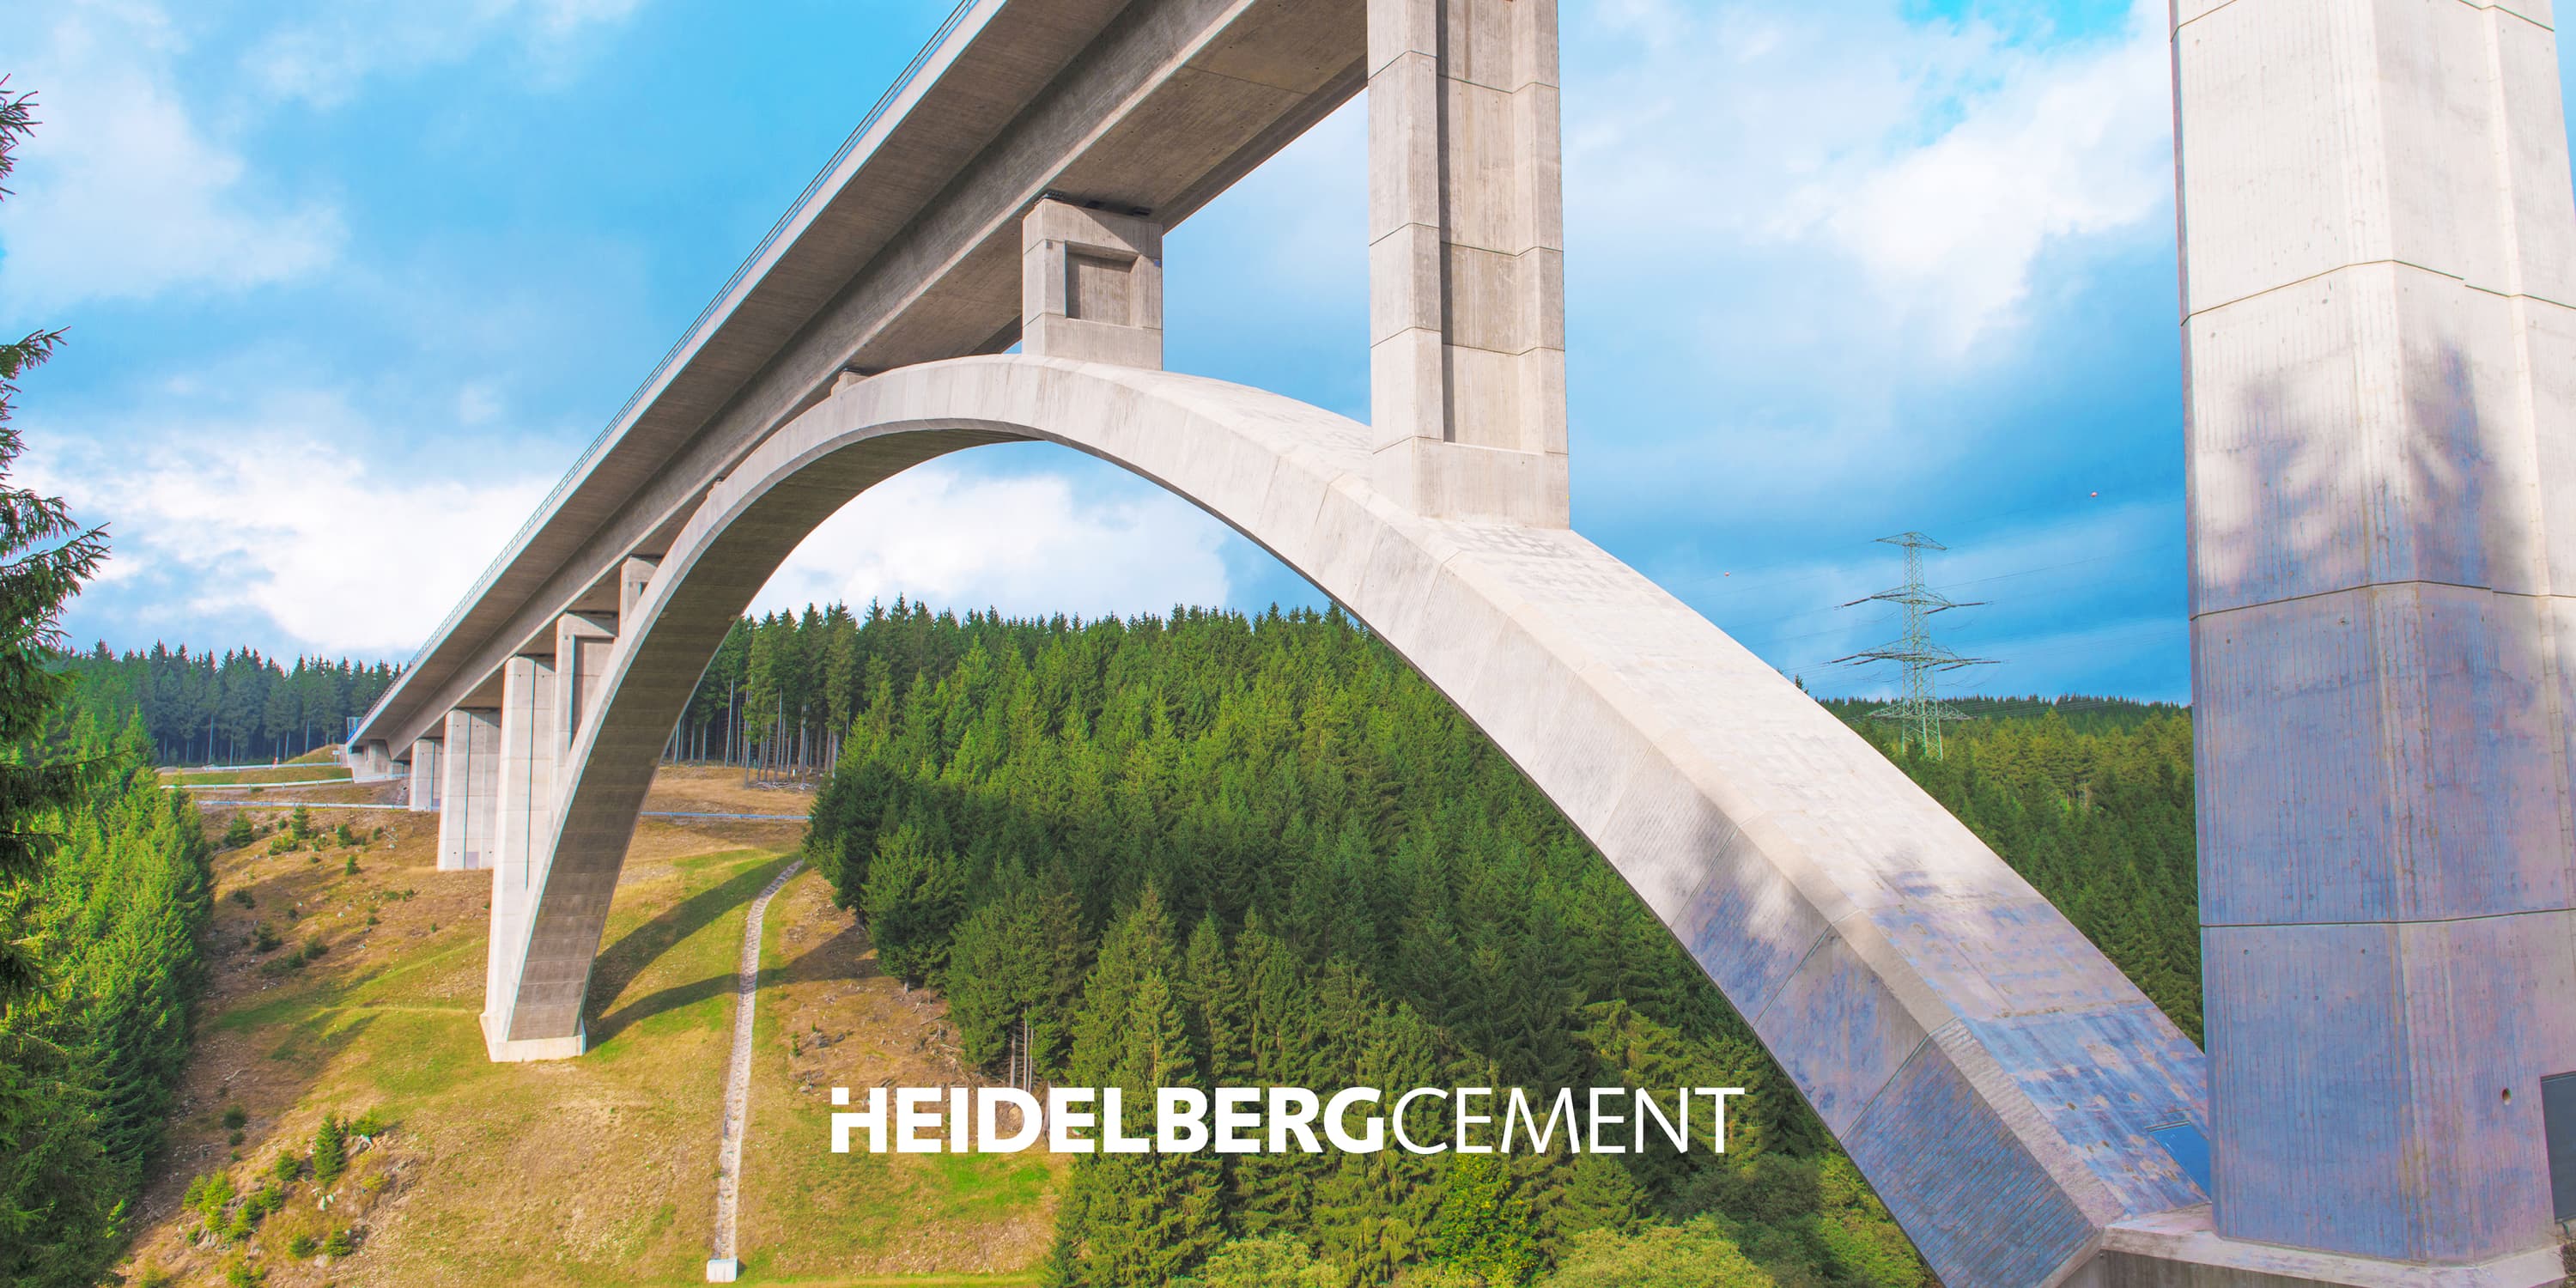 HeidelbergCement Aktienanalyse: Dividende in Stein gemeißelt oder bröckelt die Zukunft?